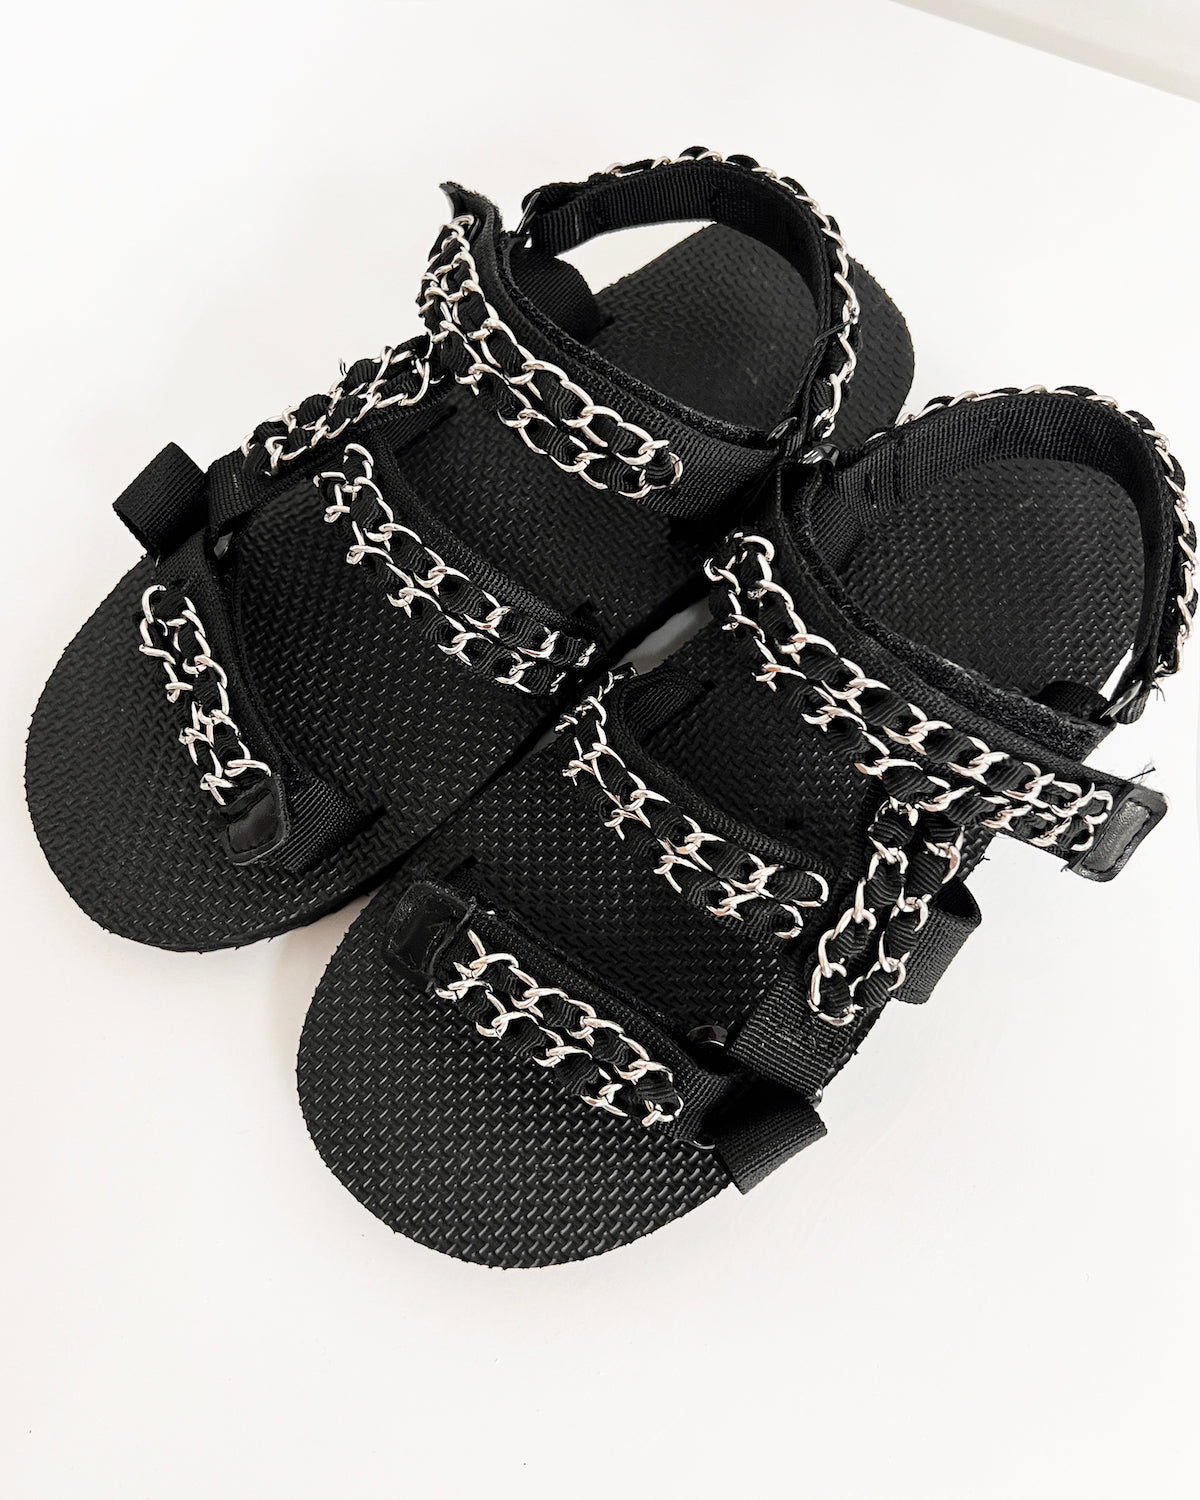 black silver chain strappy sandals *pre-order*